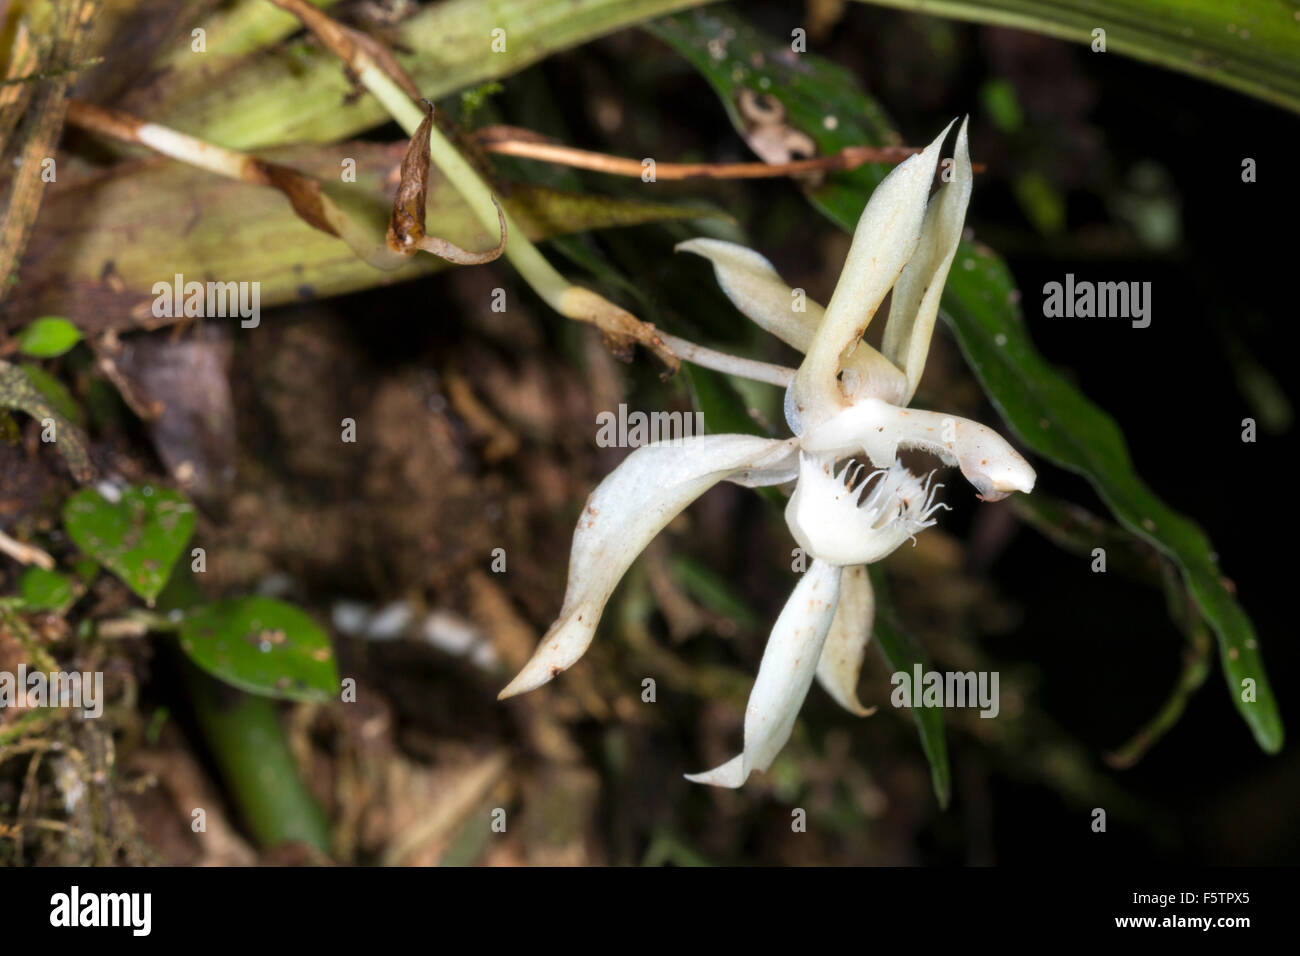 Amazon orchid immagini e fotografie stock ad alta risoluzione - Alamy